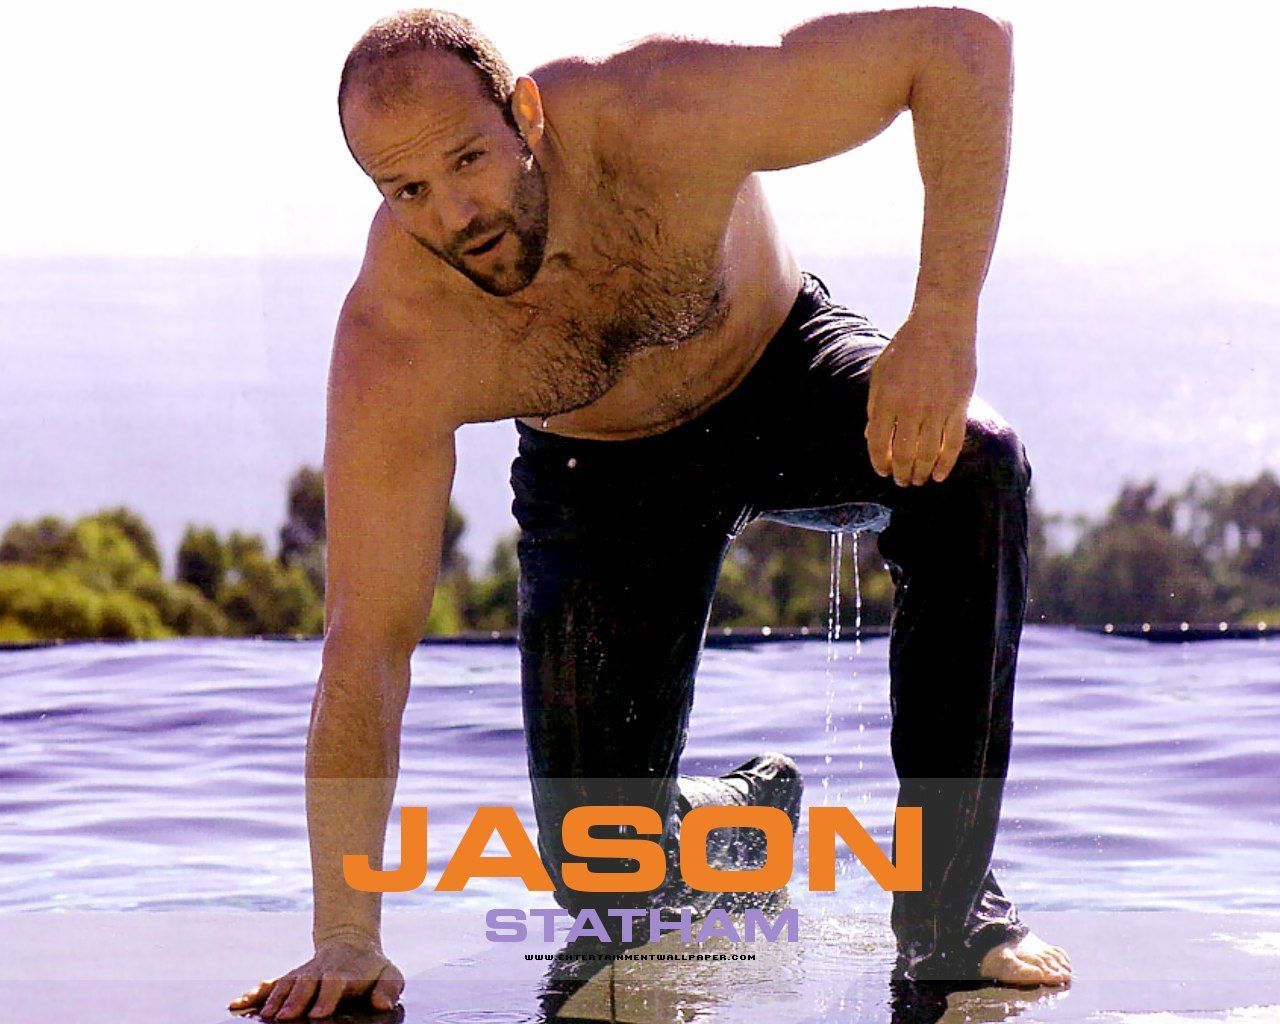 Jason Statham Wallpaper: Jason Statham. Jason statham, Jason statham martial arts, Jason statham body